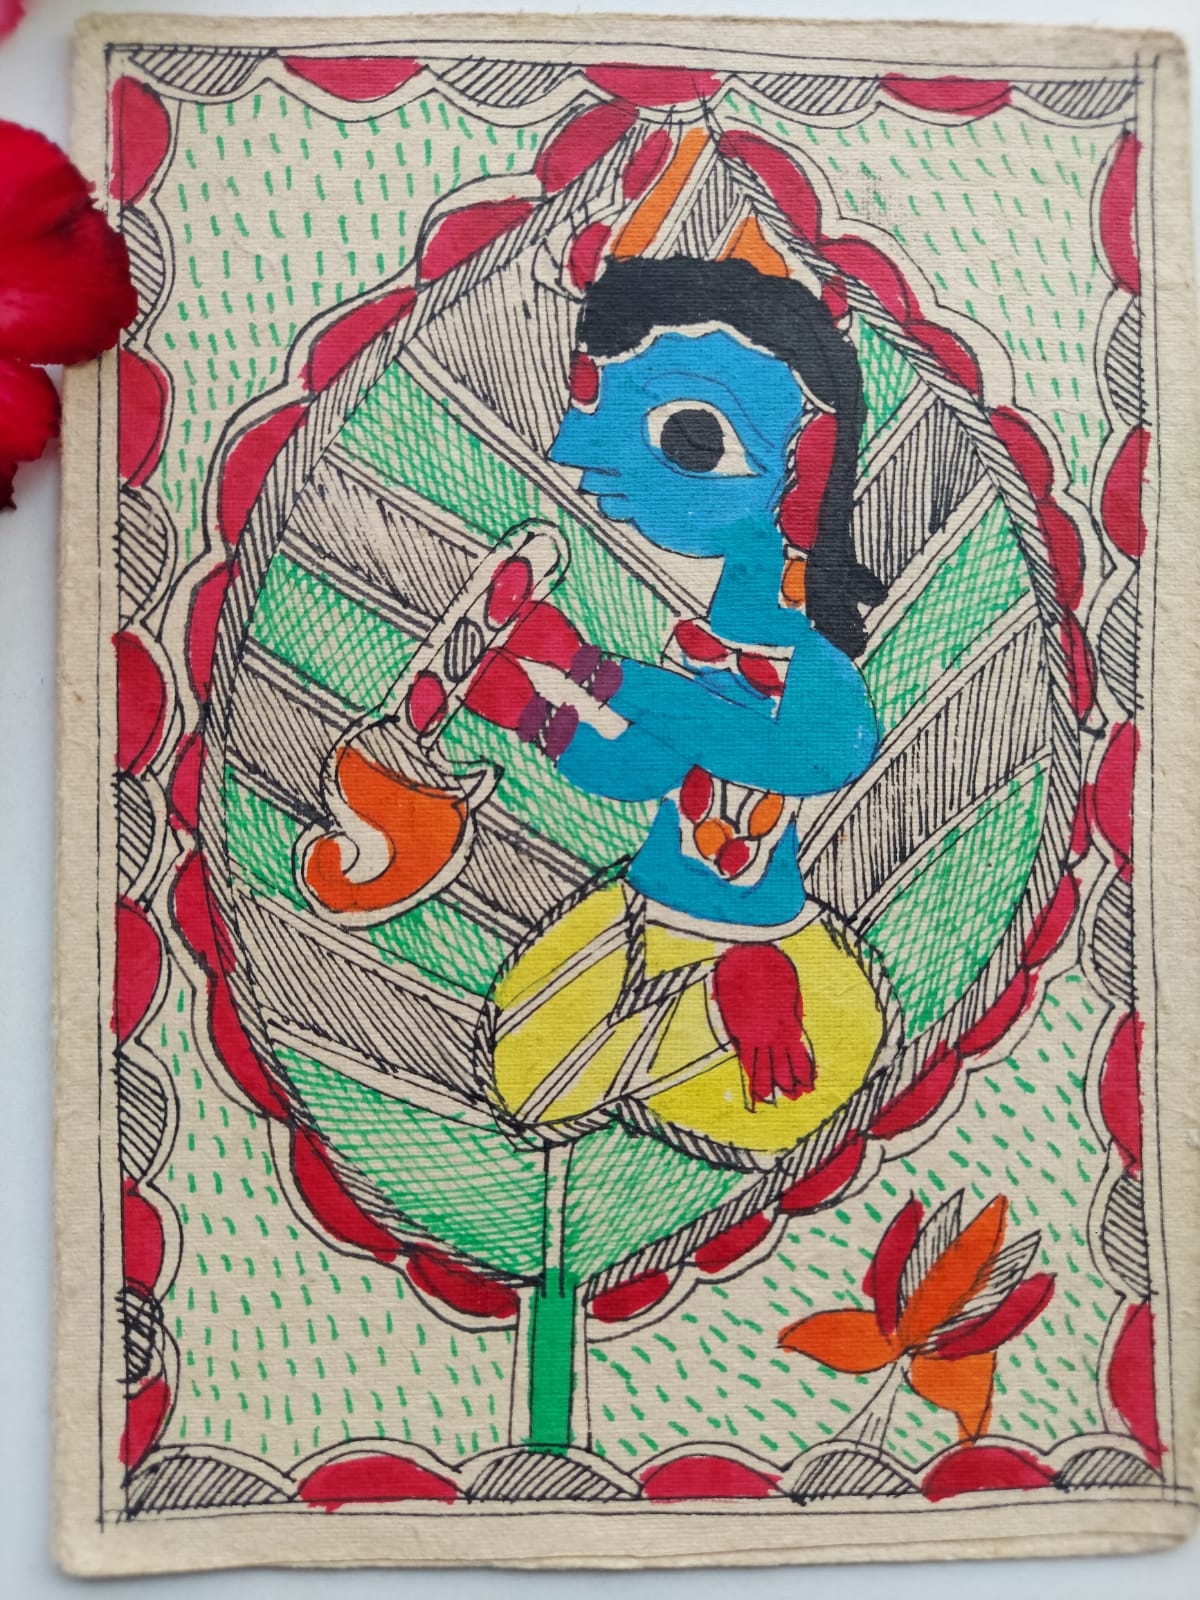 Madhubani Painting by Sikha Kumari